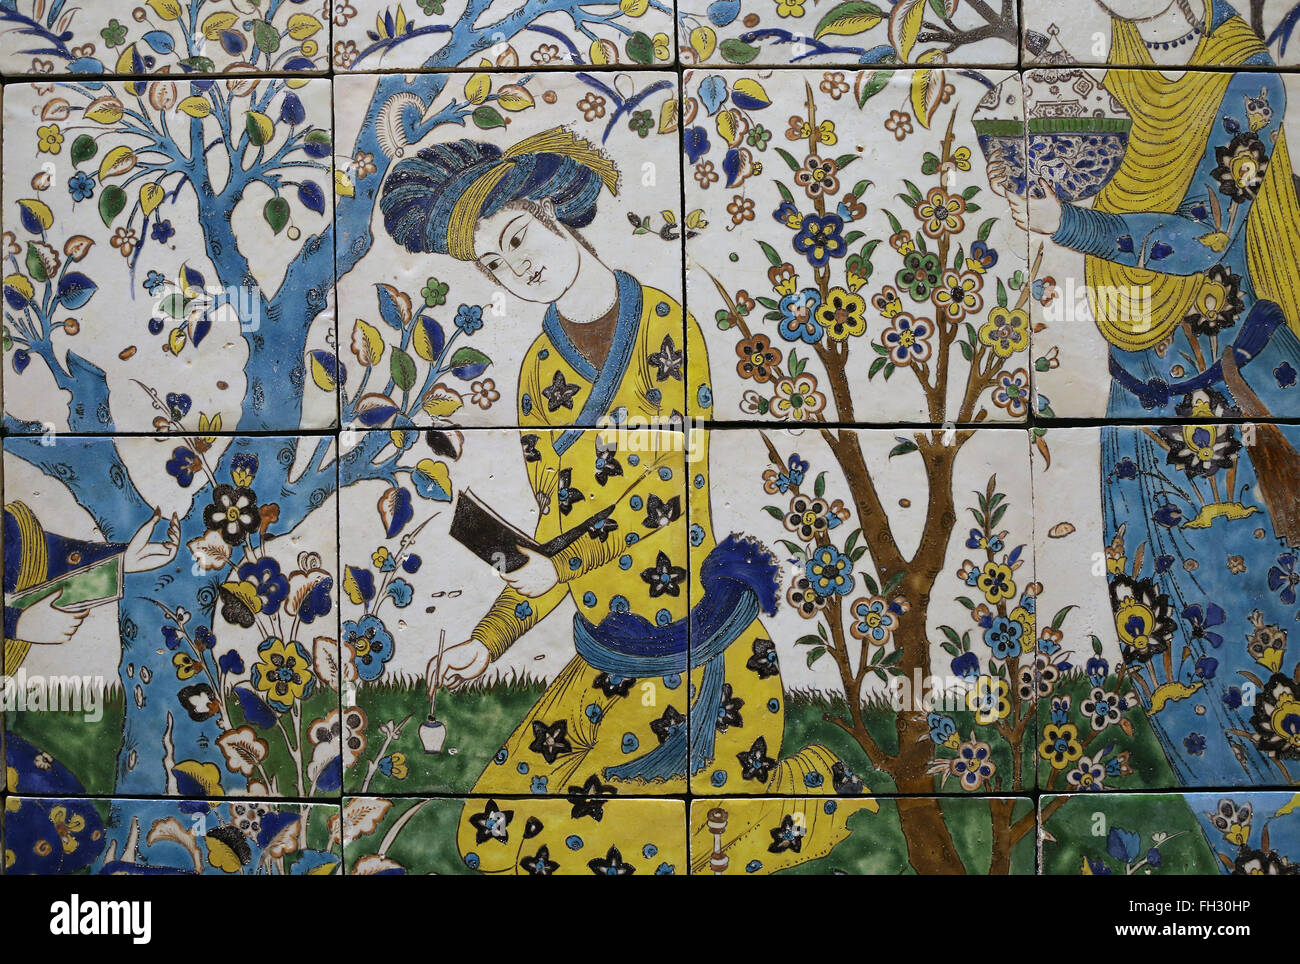 Rencontre dans un jardin. L'Iran. 17e siècle. Vitrage de couleur. Isfahan. Période safavide. Musée du Louvre. Paris. La France. Banque D'Images